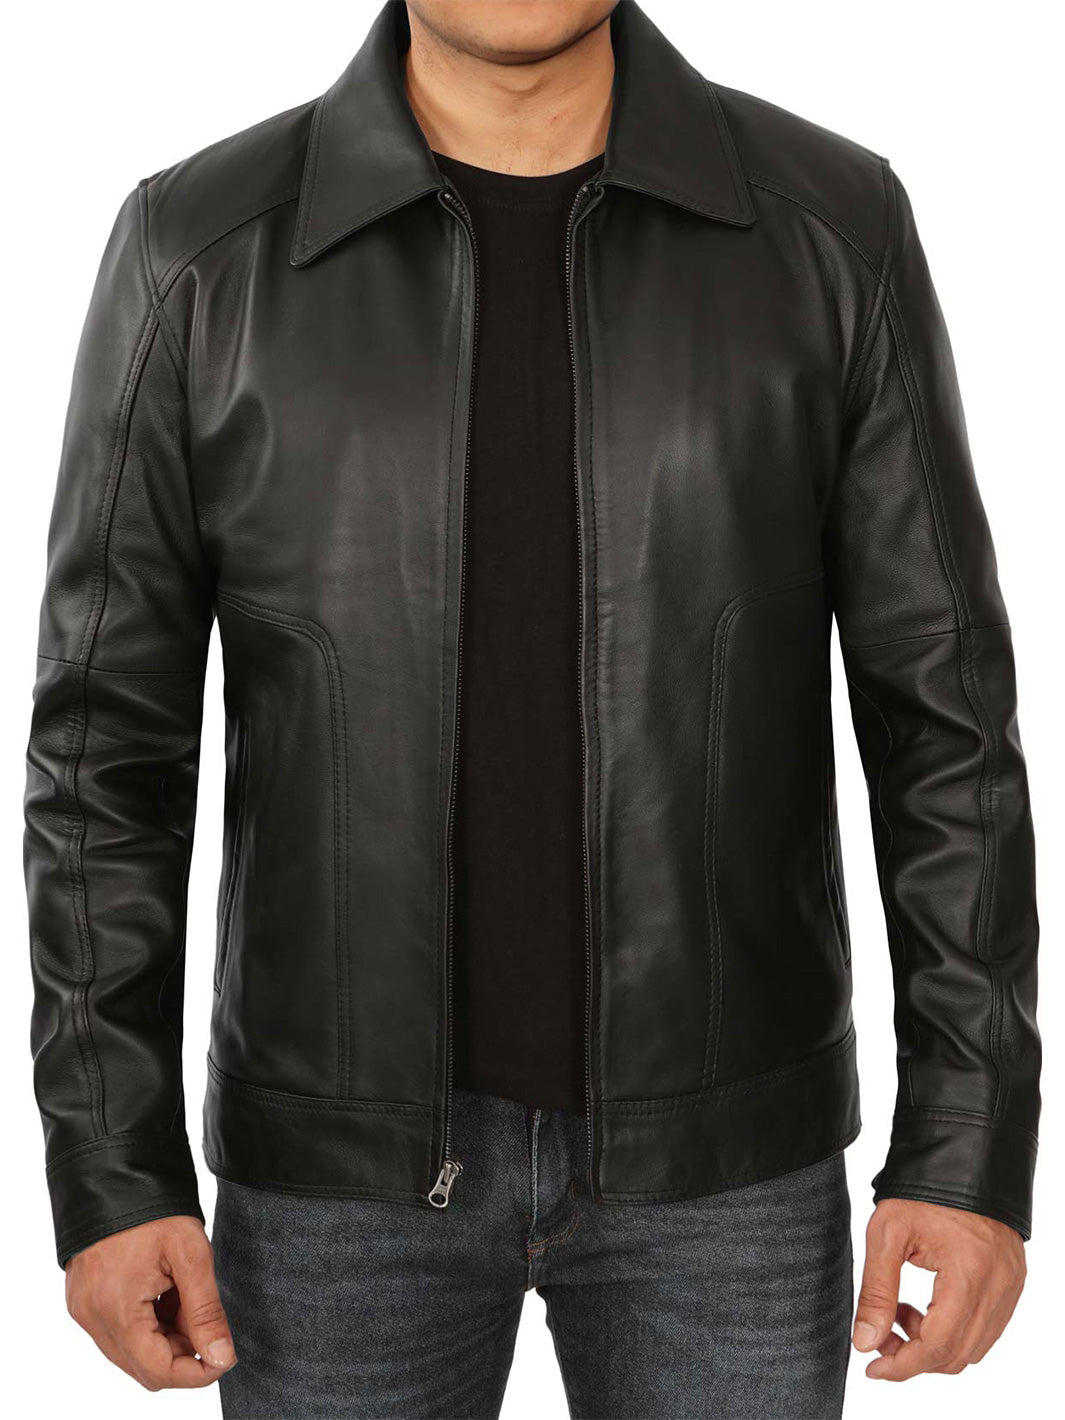 Mens Black leather biker jacket